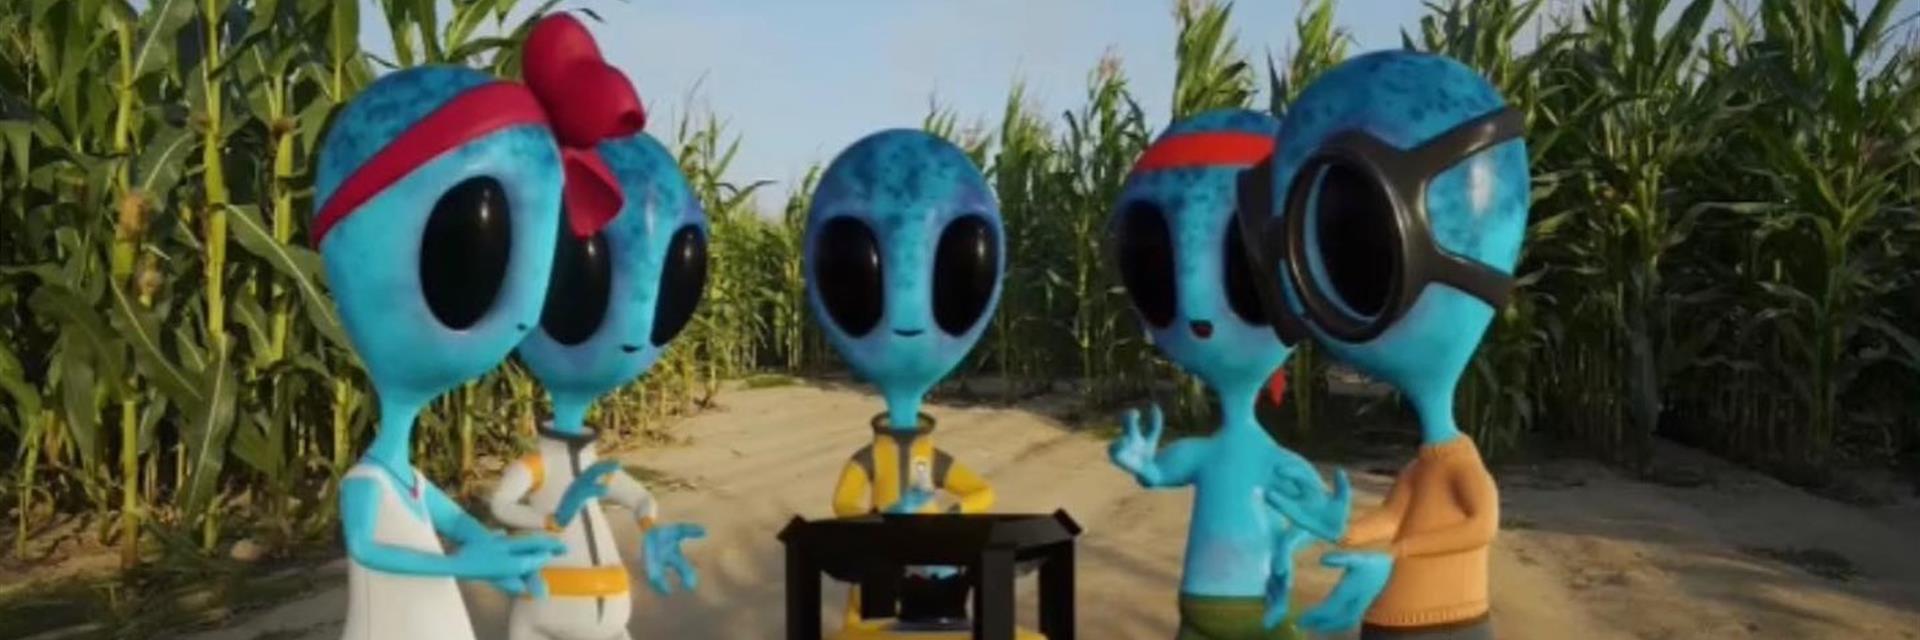 aliens in a corn maze